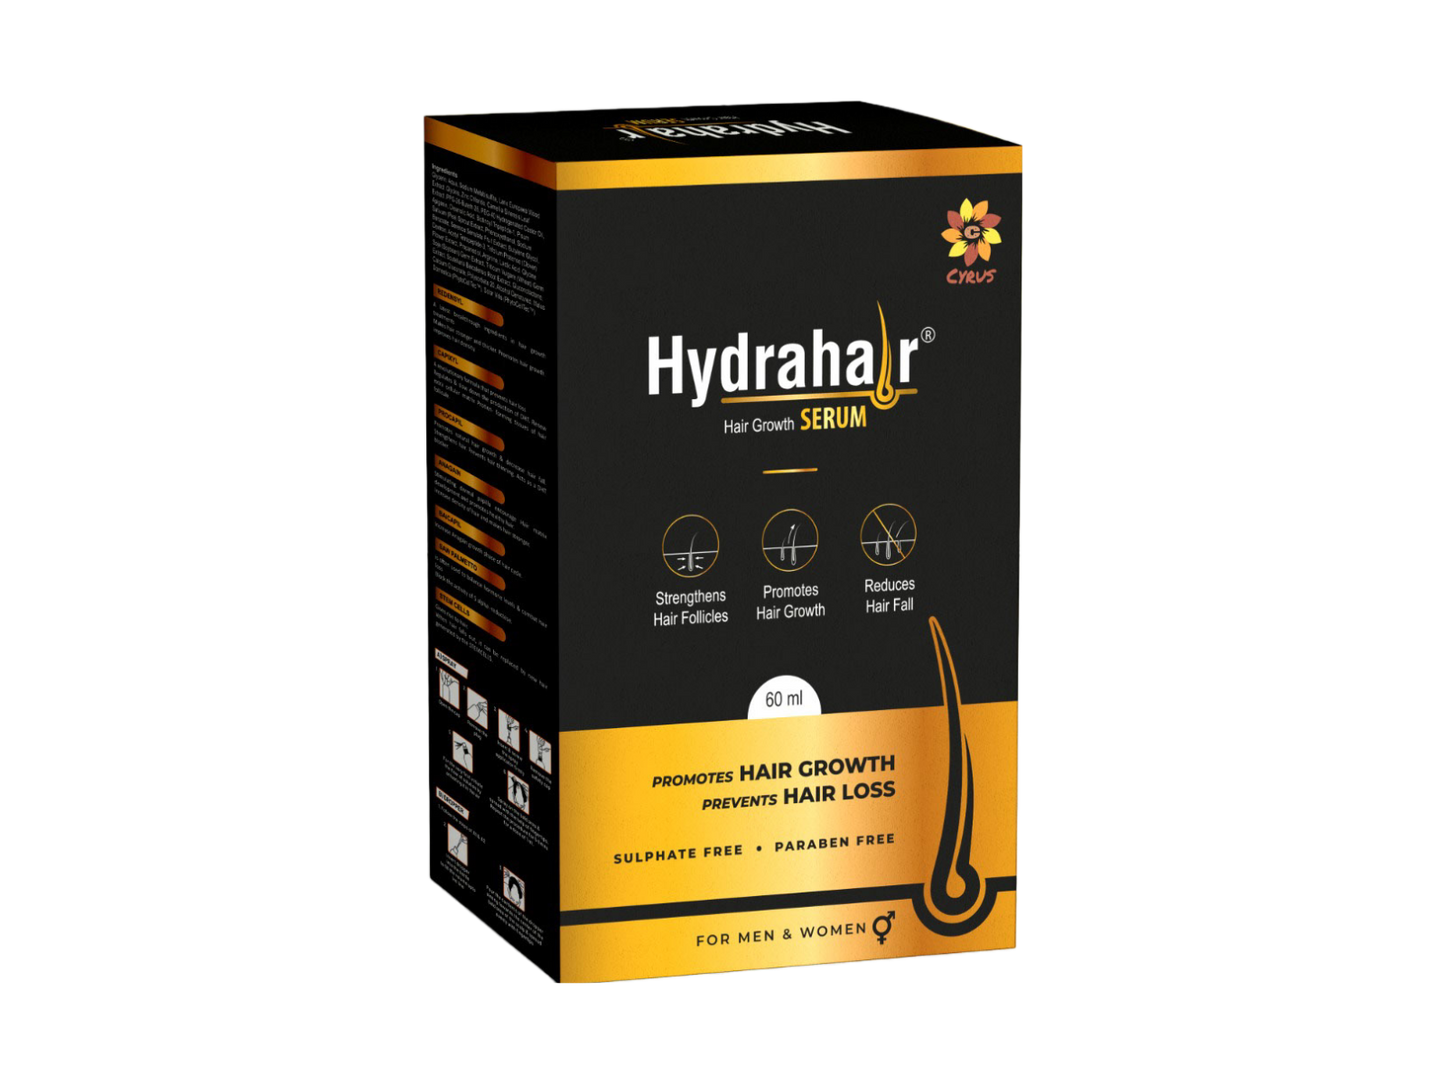 Hydrahair Hair Growth Serum